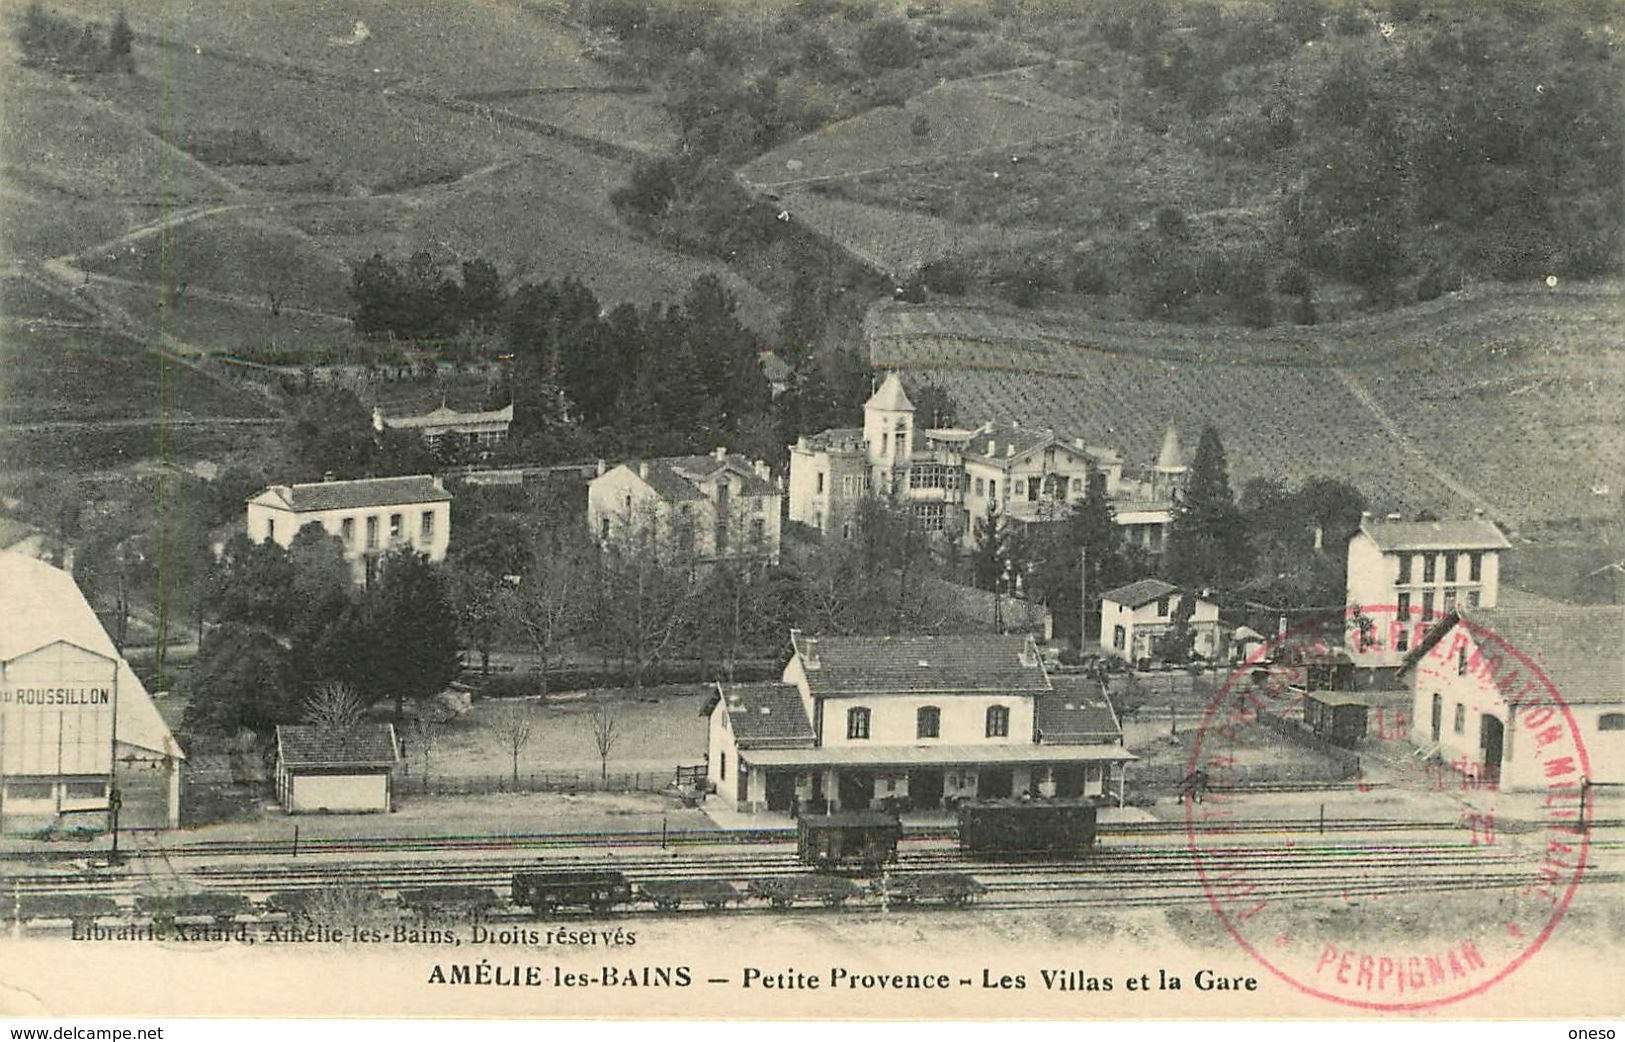 Pyrénées Orientales - Lot N° 245 - Lots en vrac - Lot divers du département des Pyrenees Orientales - Lot de 62 cartes